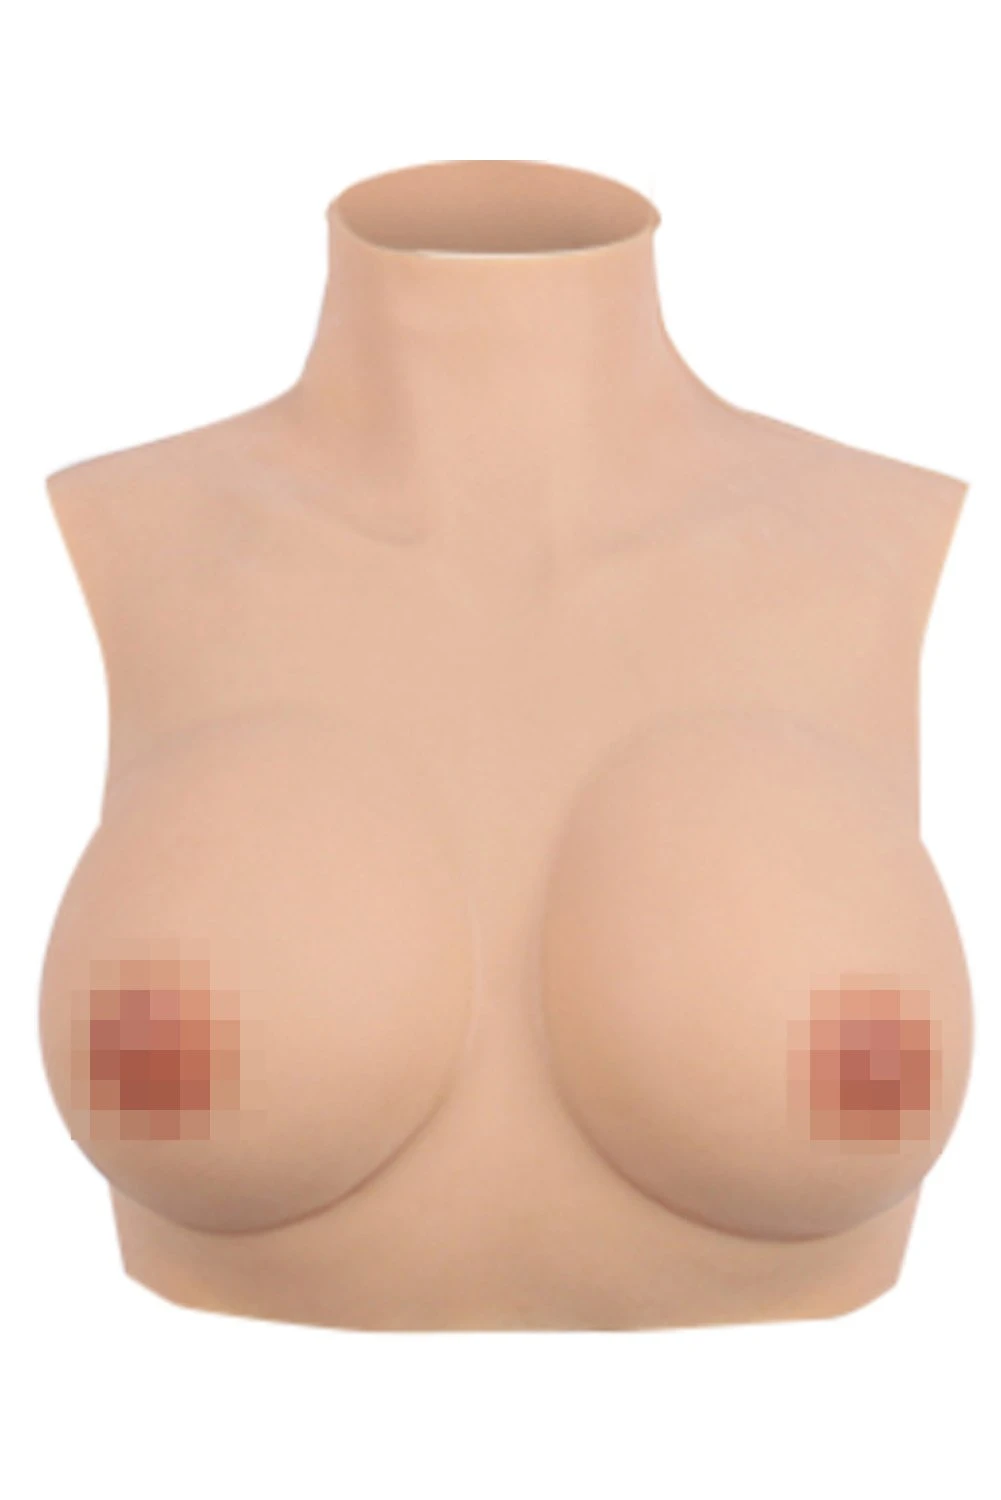 Half Body Silikon Fake Breasts Forms DWT Falsche Brüste Mastektomie Cosplay Transgender Schauspieler Brustprothese - cosplaycartde